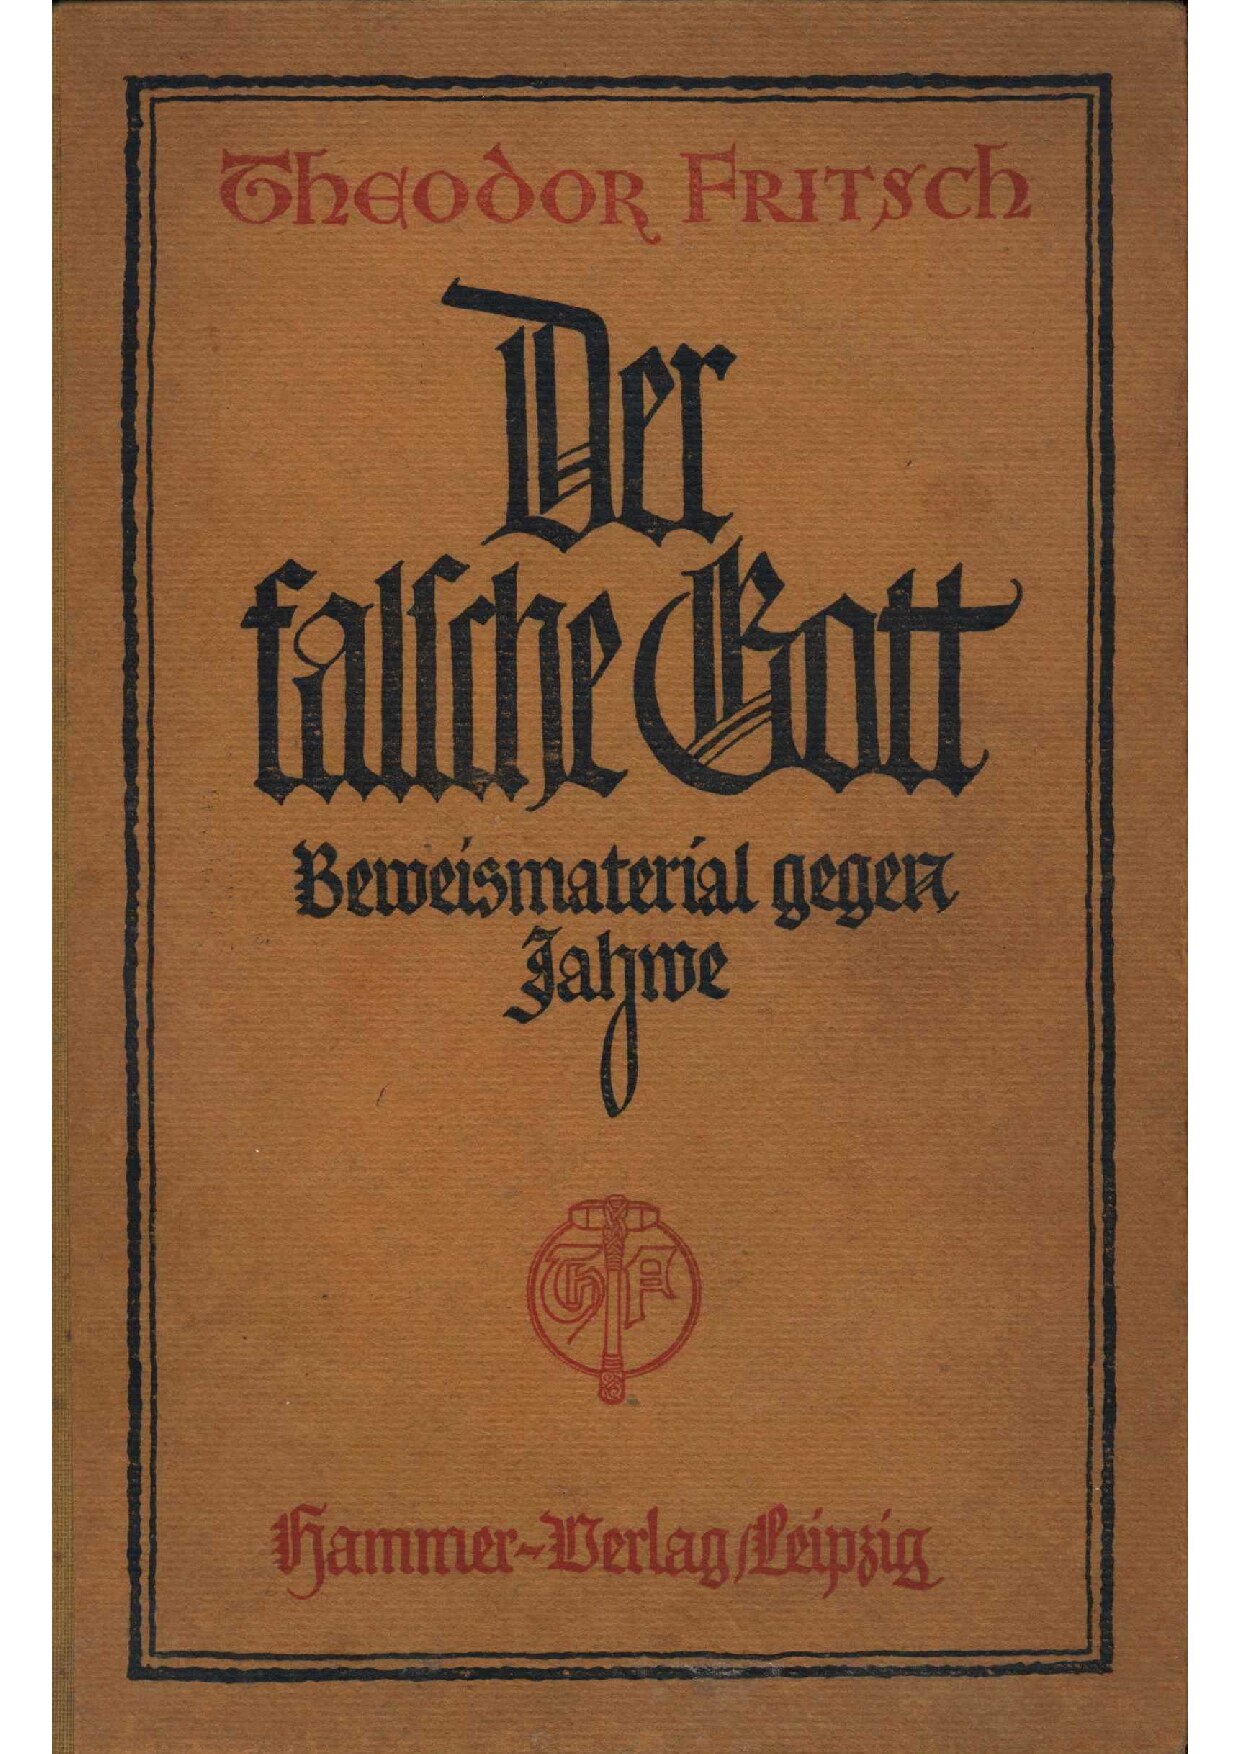 Der falsche Gott - Beweismaterial gegen Jahwe (1921, 246 S., Scan, Fraktur)